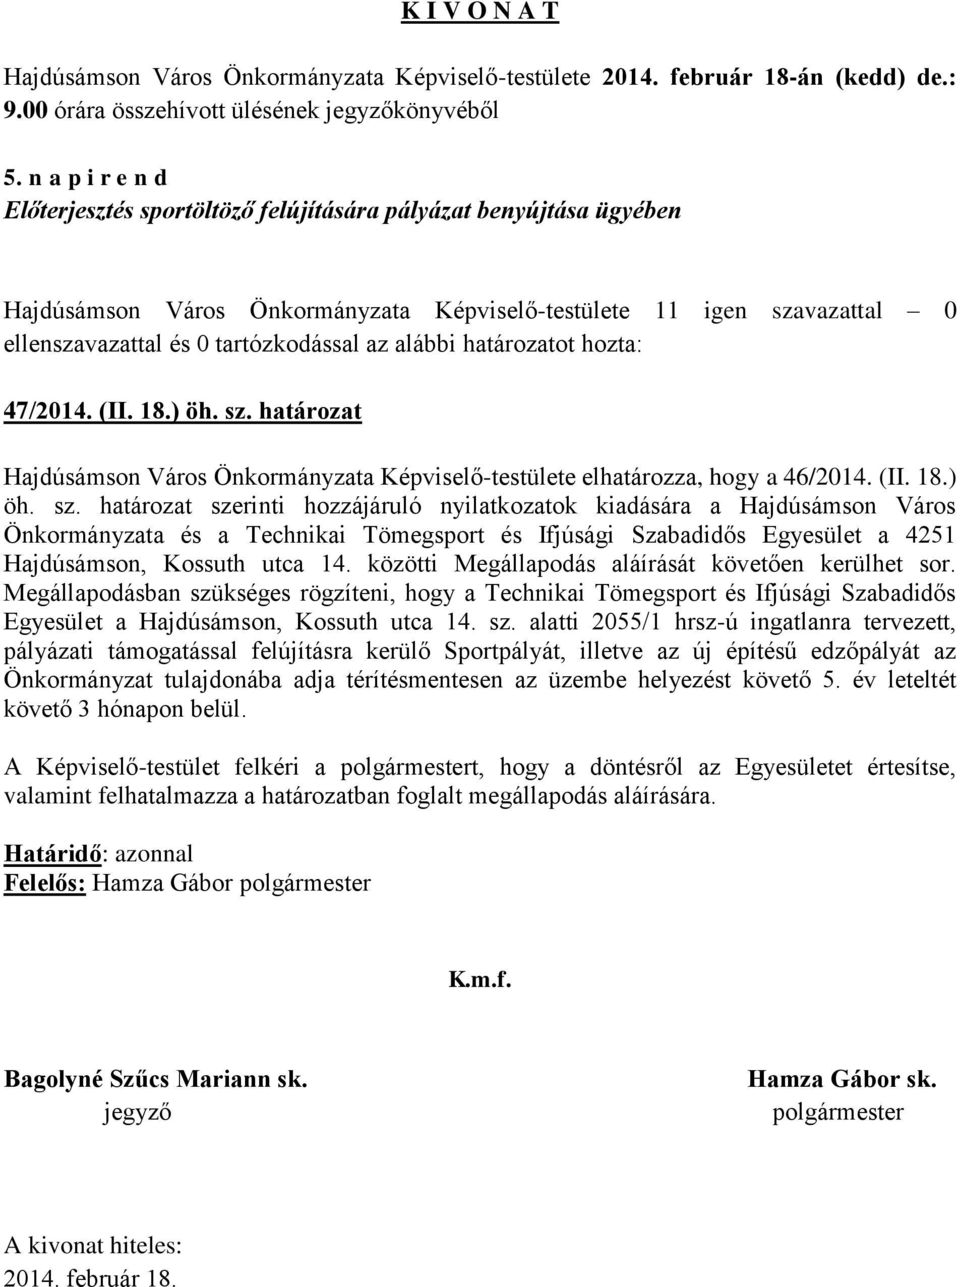 határozat szerinti hozzájáruló nyilatkozatok kiadására a Hajdúsámson Város Önkormányzata és a Technikai Tömegsport és Ifjúsági Szabadidős Egyesület a 4251 Hajdúsámson, Kossuth utca 14.